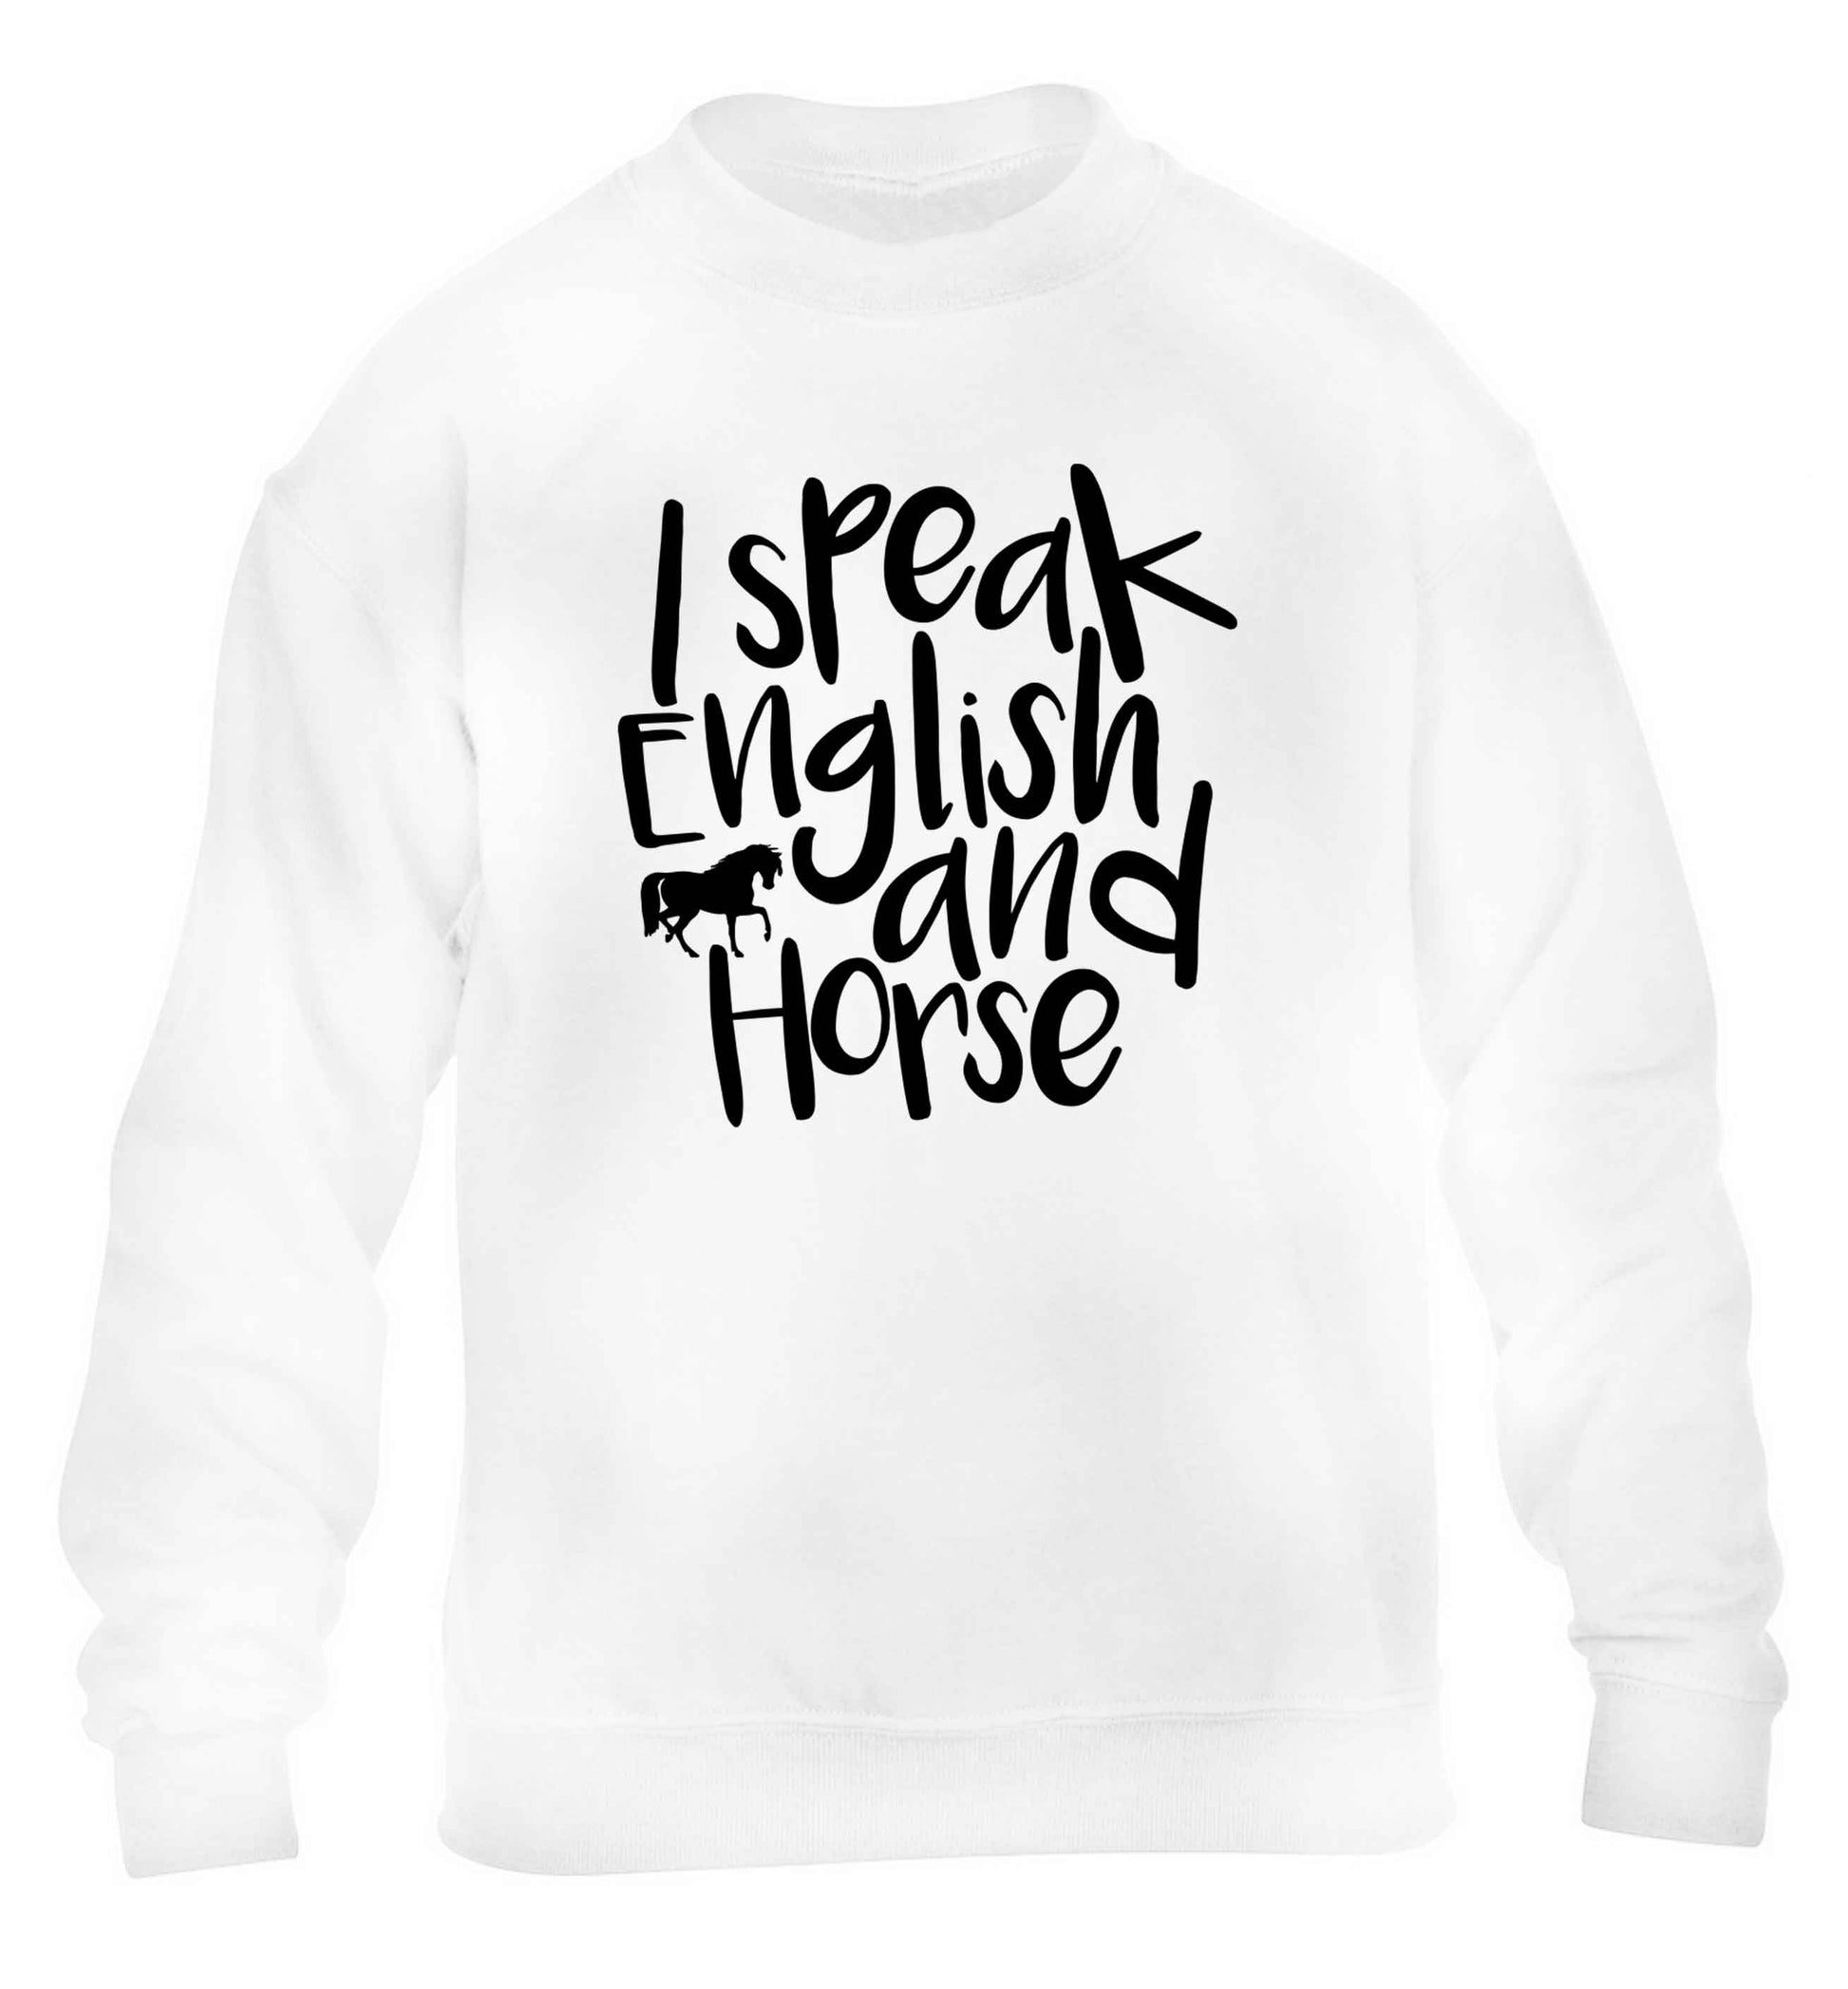 I speak English and horse children's white sweater 12-13 Years